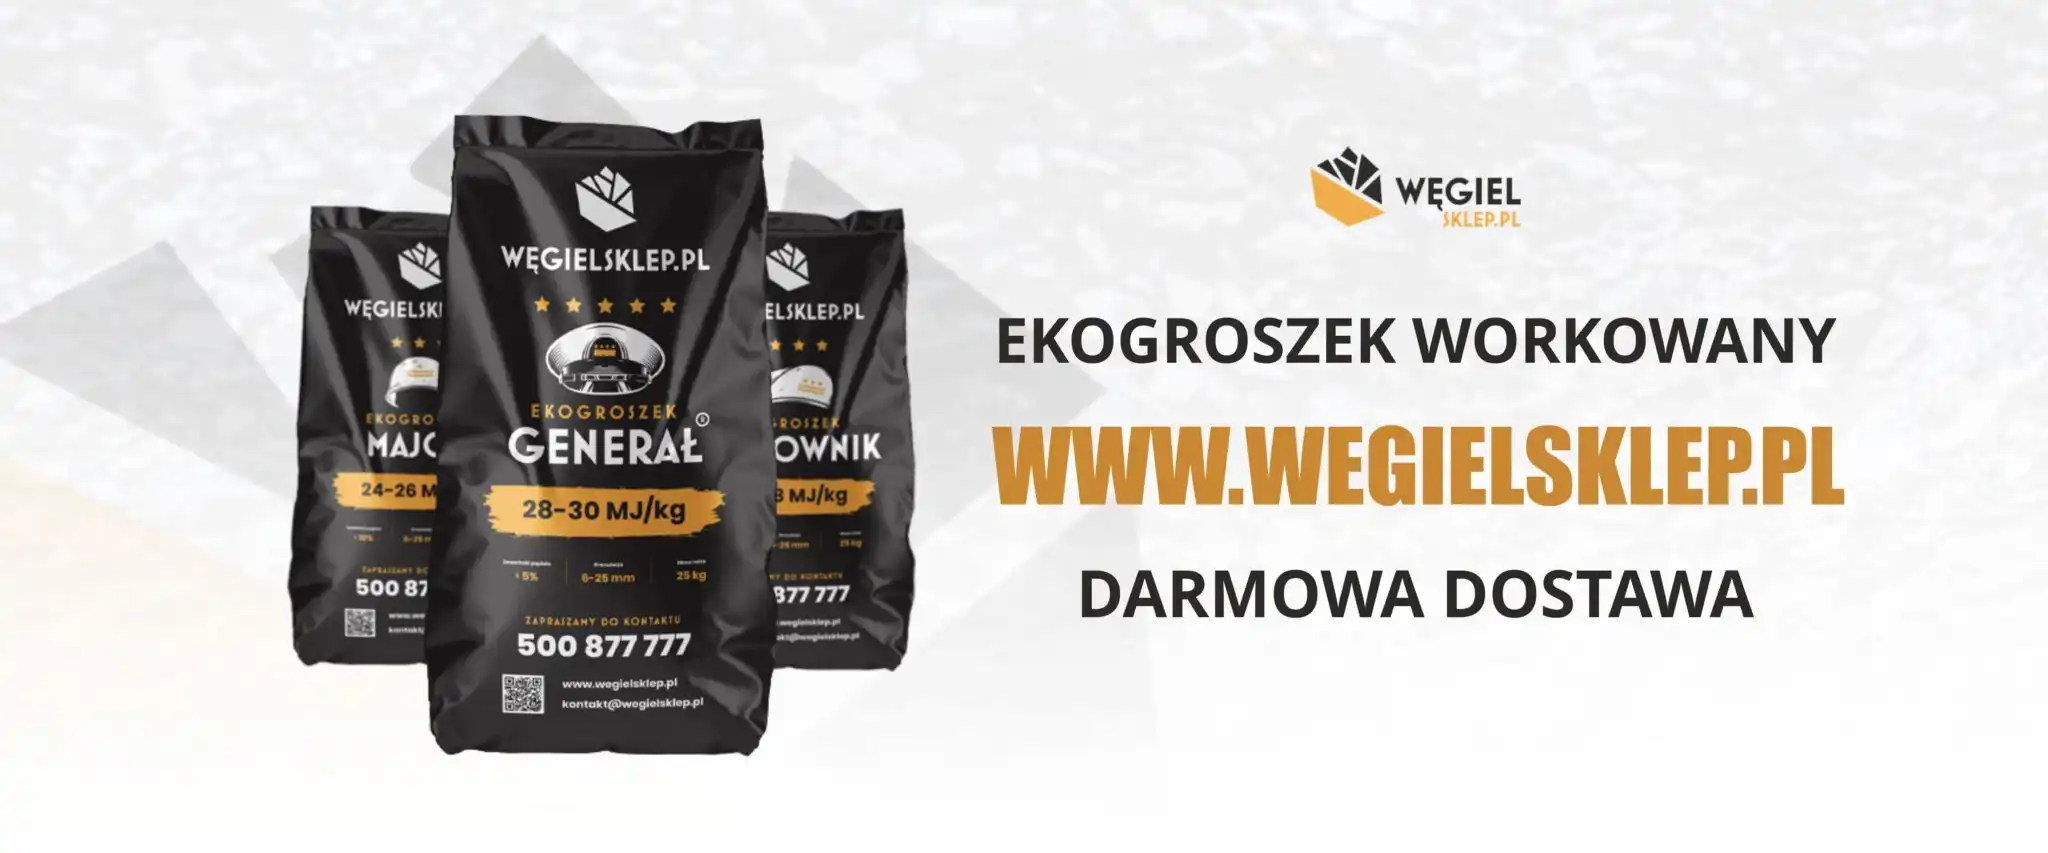 Oferta sklepu internetowego www.wegielsklep.pl - ekogroszek workowany z darmową dostawą.